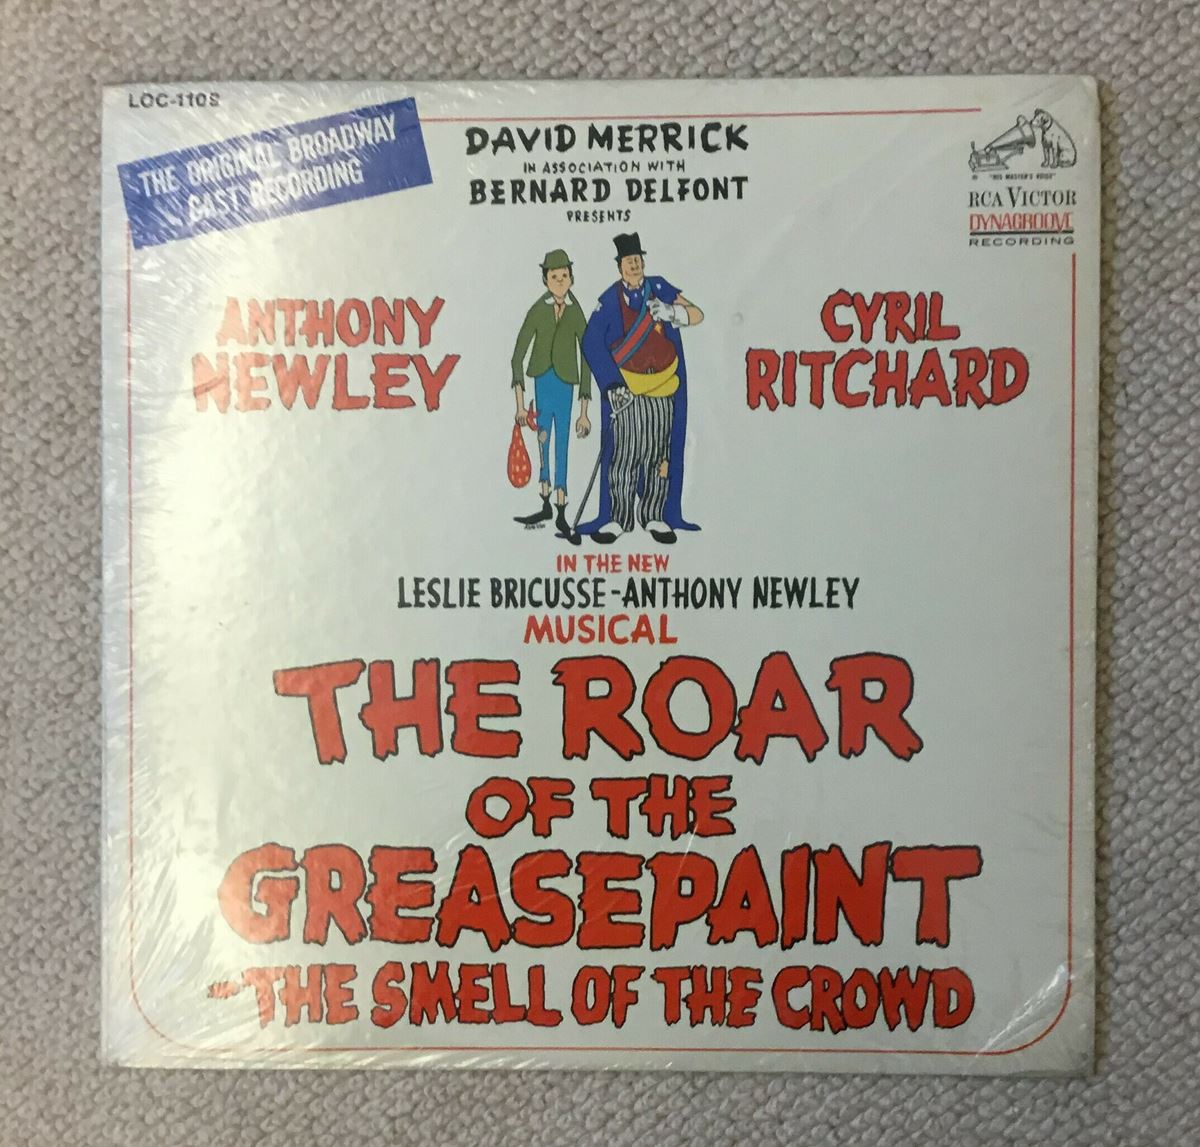 1965年開幕のブロードウエイ・ミュージカル『ドーランの叫び−観客の匂い』の オリジナル・キャスト版。バーブラの取り上げた「フー・キャン・アイ・ターン・トゥ」 はこのミュージカルの中の主題曲です。　※著者コレクションより